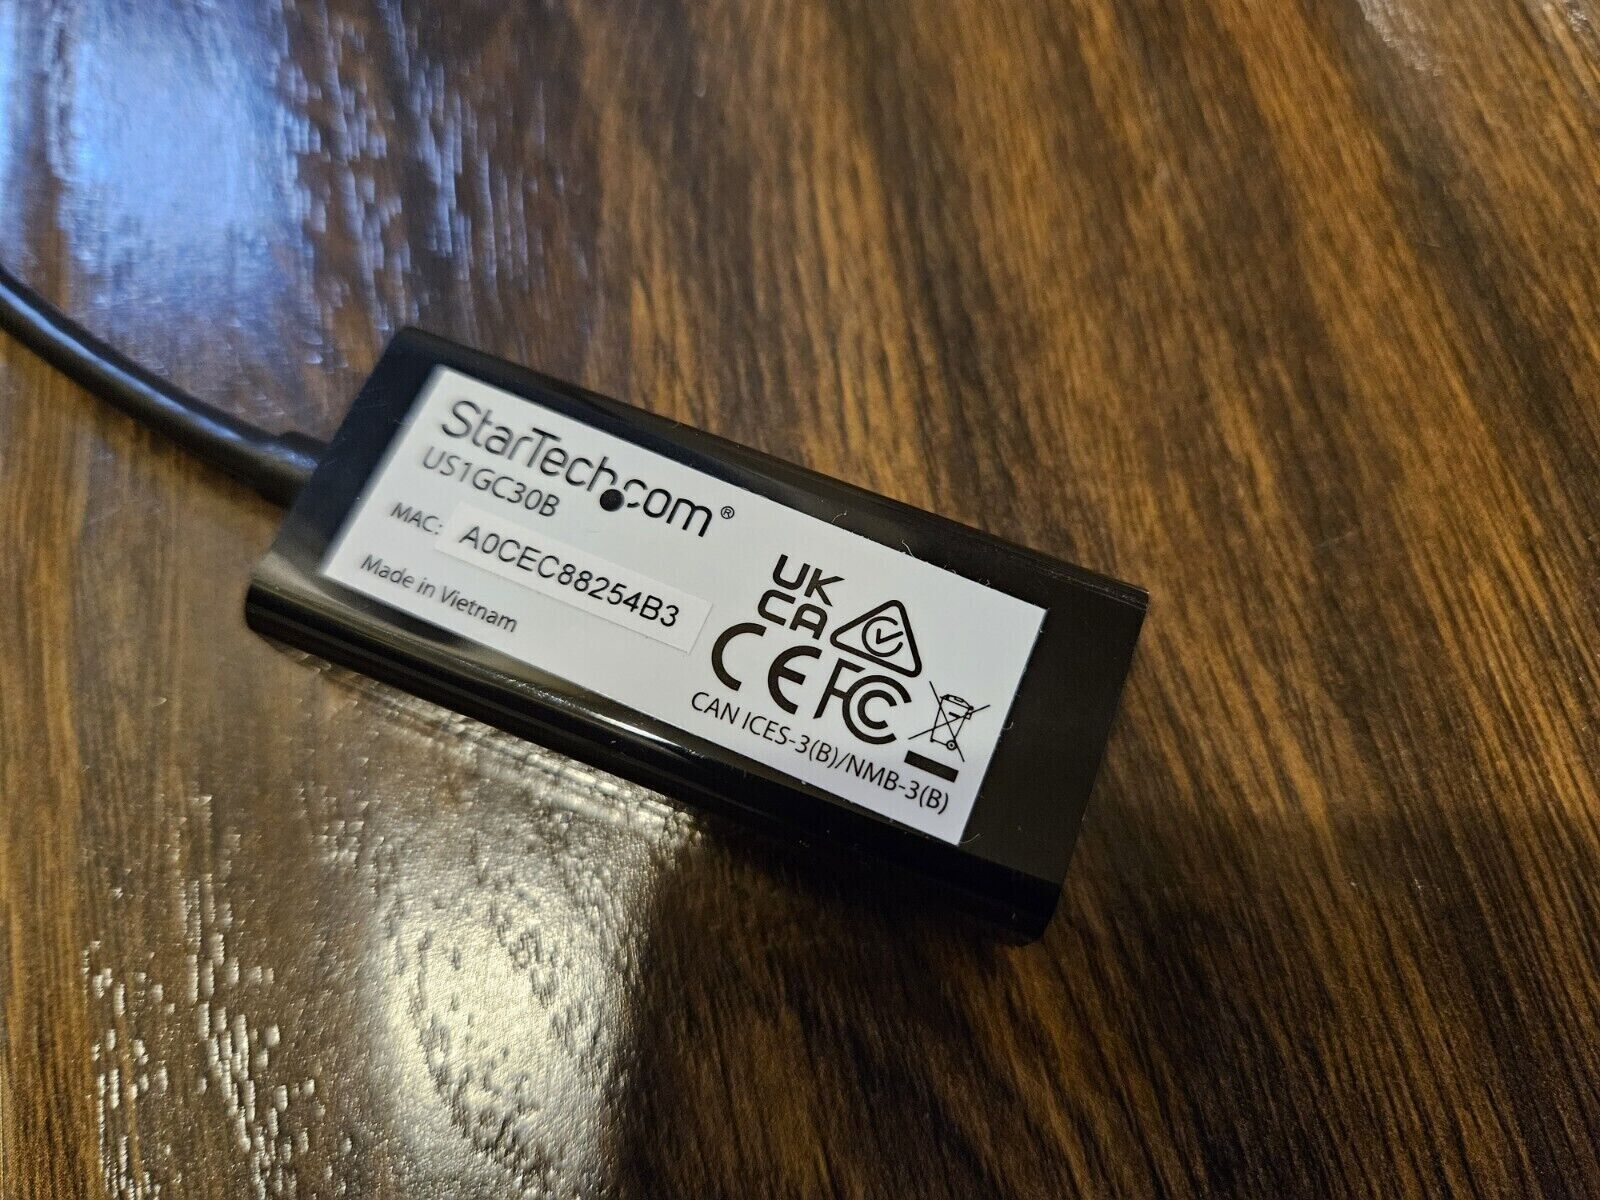 LOT OF 10 StarTech USB-C to Gigabit Network Adapter USB 3.1 Gen 1 - US1GC30B NEW StarTech US1GC30B - фотография #3